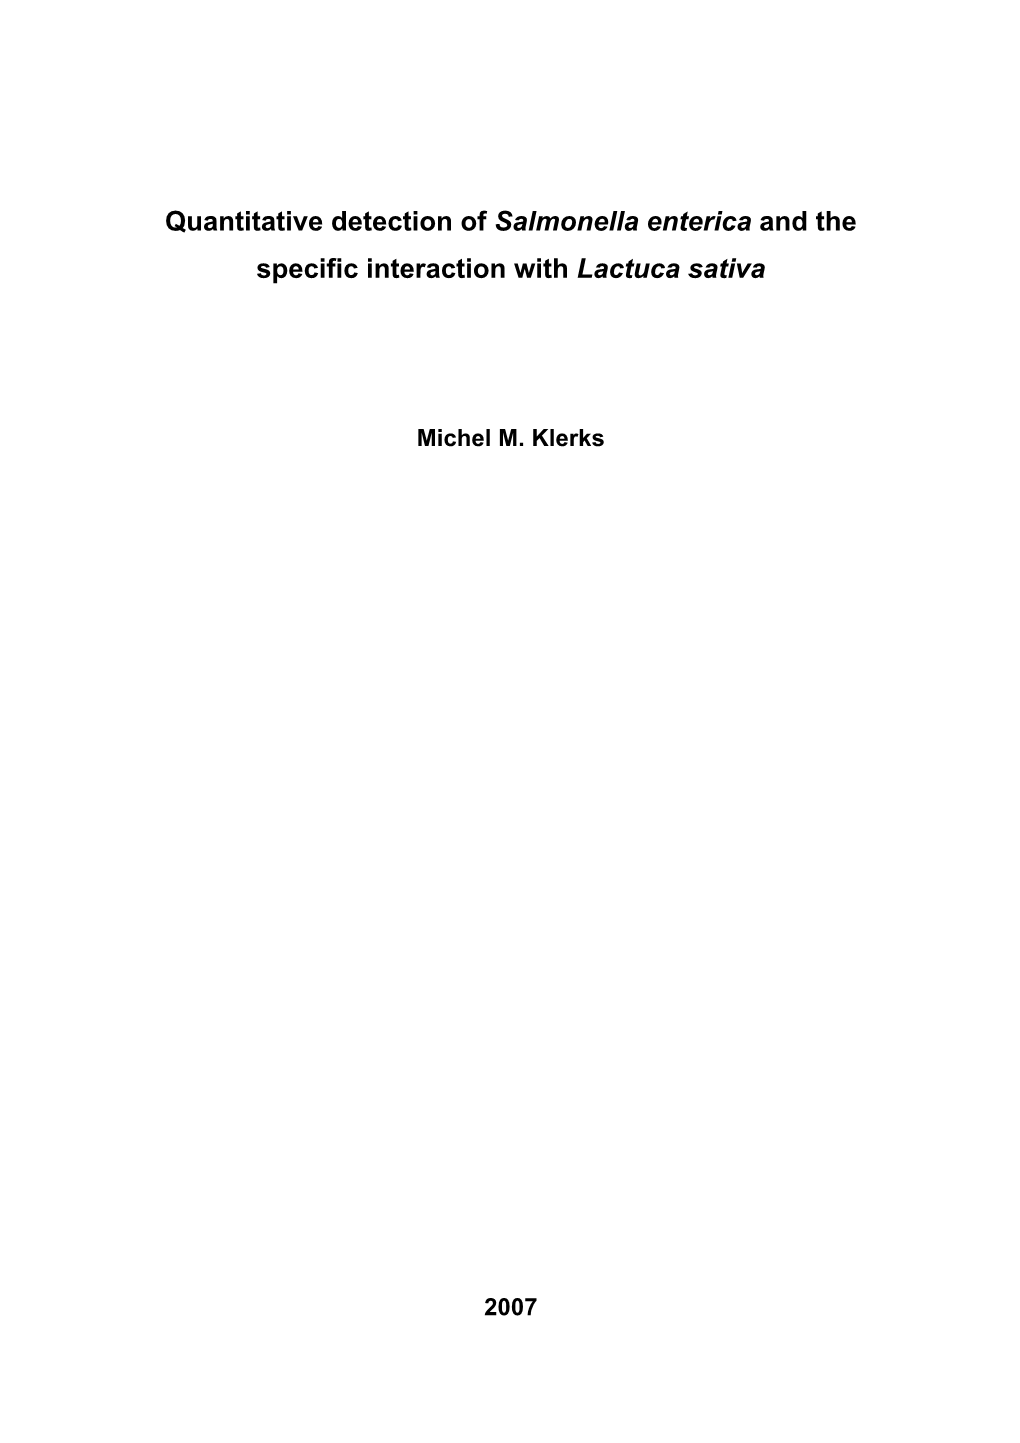 Salmonella Enterica and the Specific Interaction with Lactuca Sativa